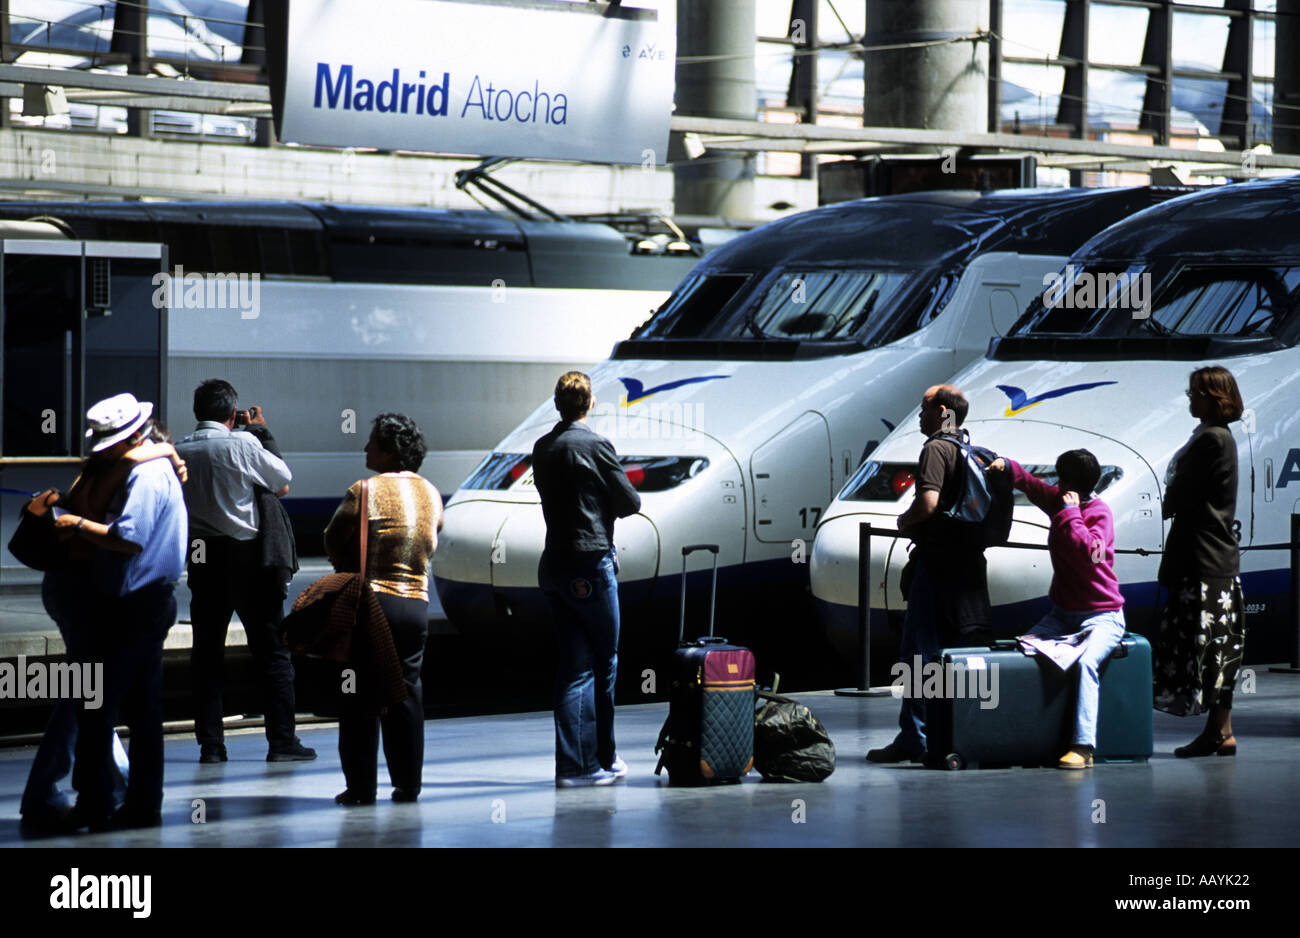 Bahnhof Atocha, ist der größte Bahnhof in Madrid, Spanien. S-Bahnen (Cercanias) und AVE-Hochgeschwindigkeitszüge dienen. Stockfoto